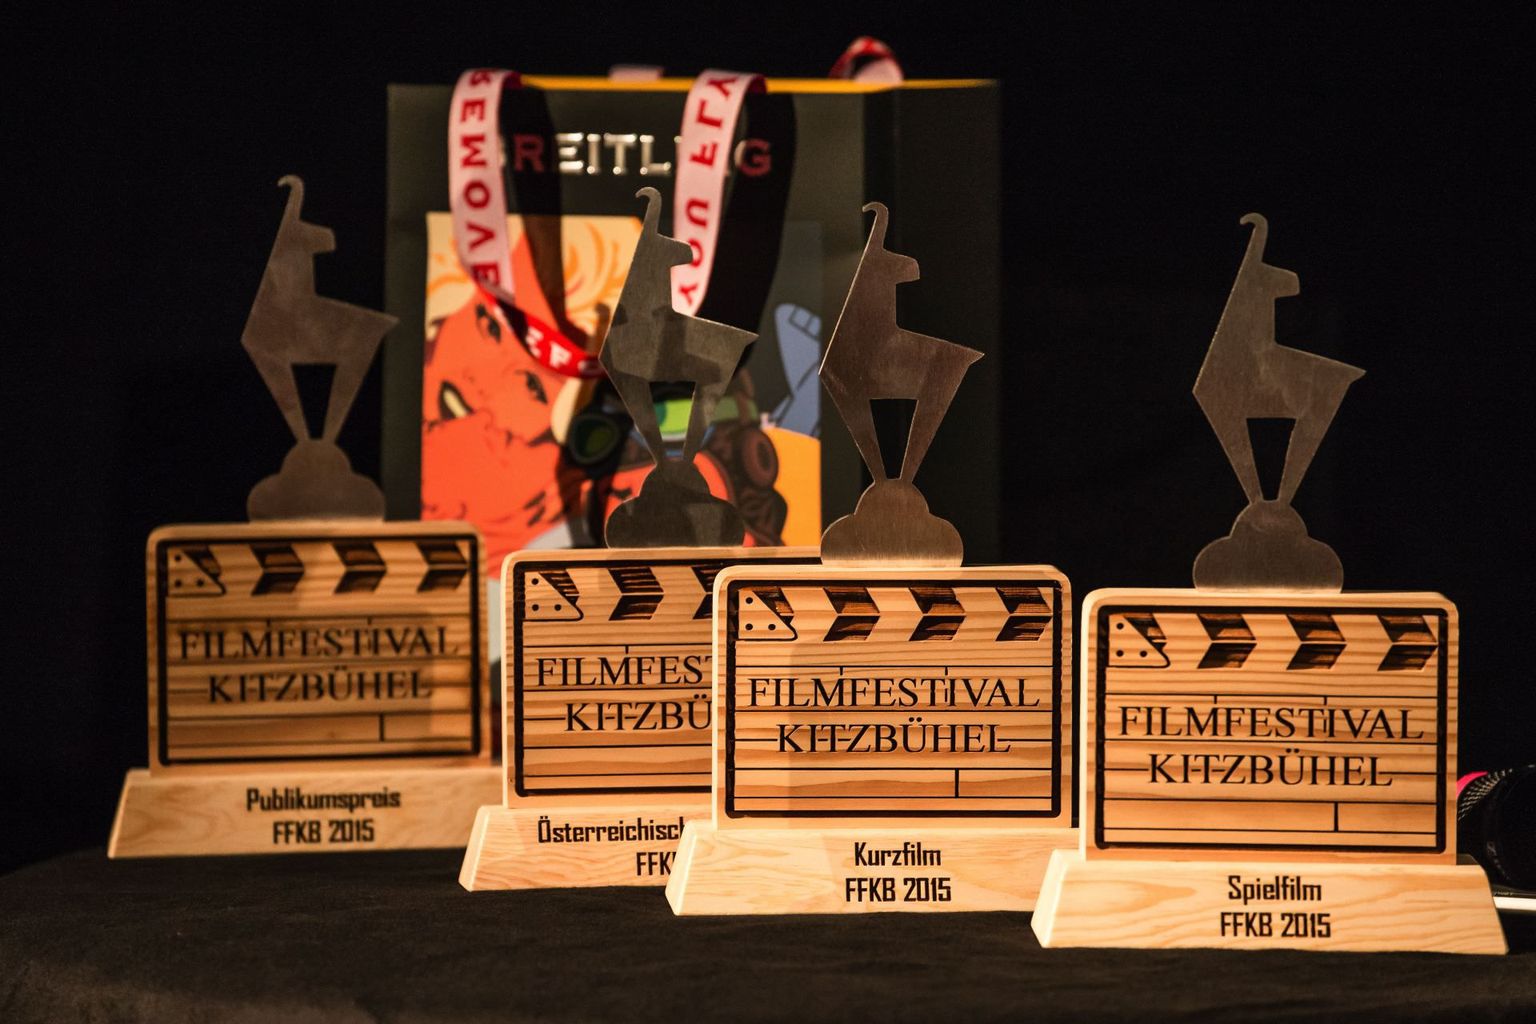 Kitzbüheli festivali auhinnad.